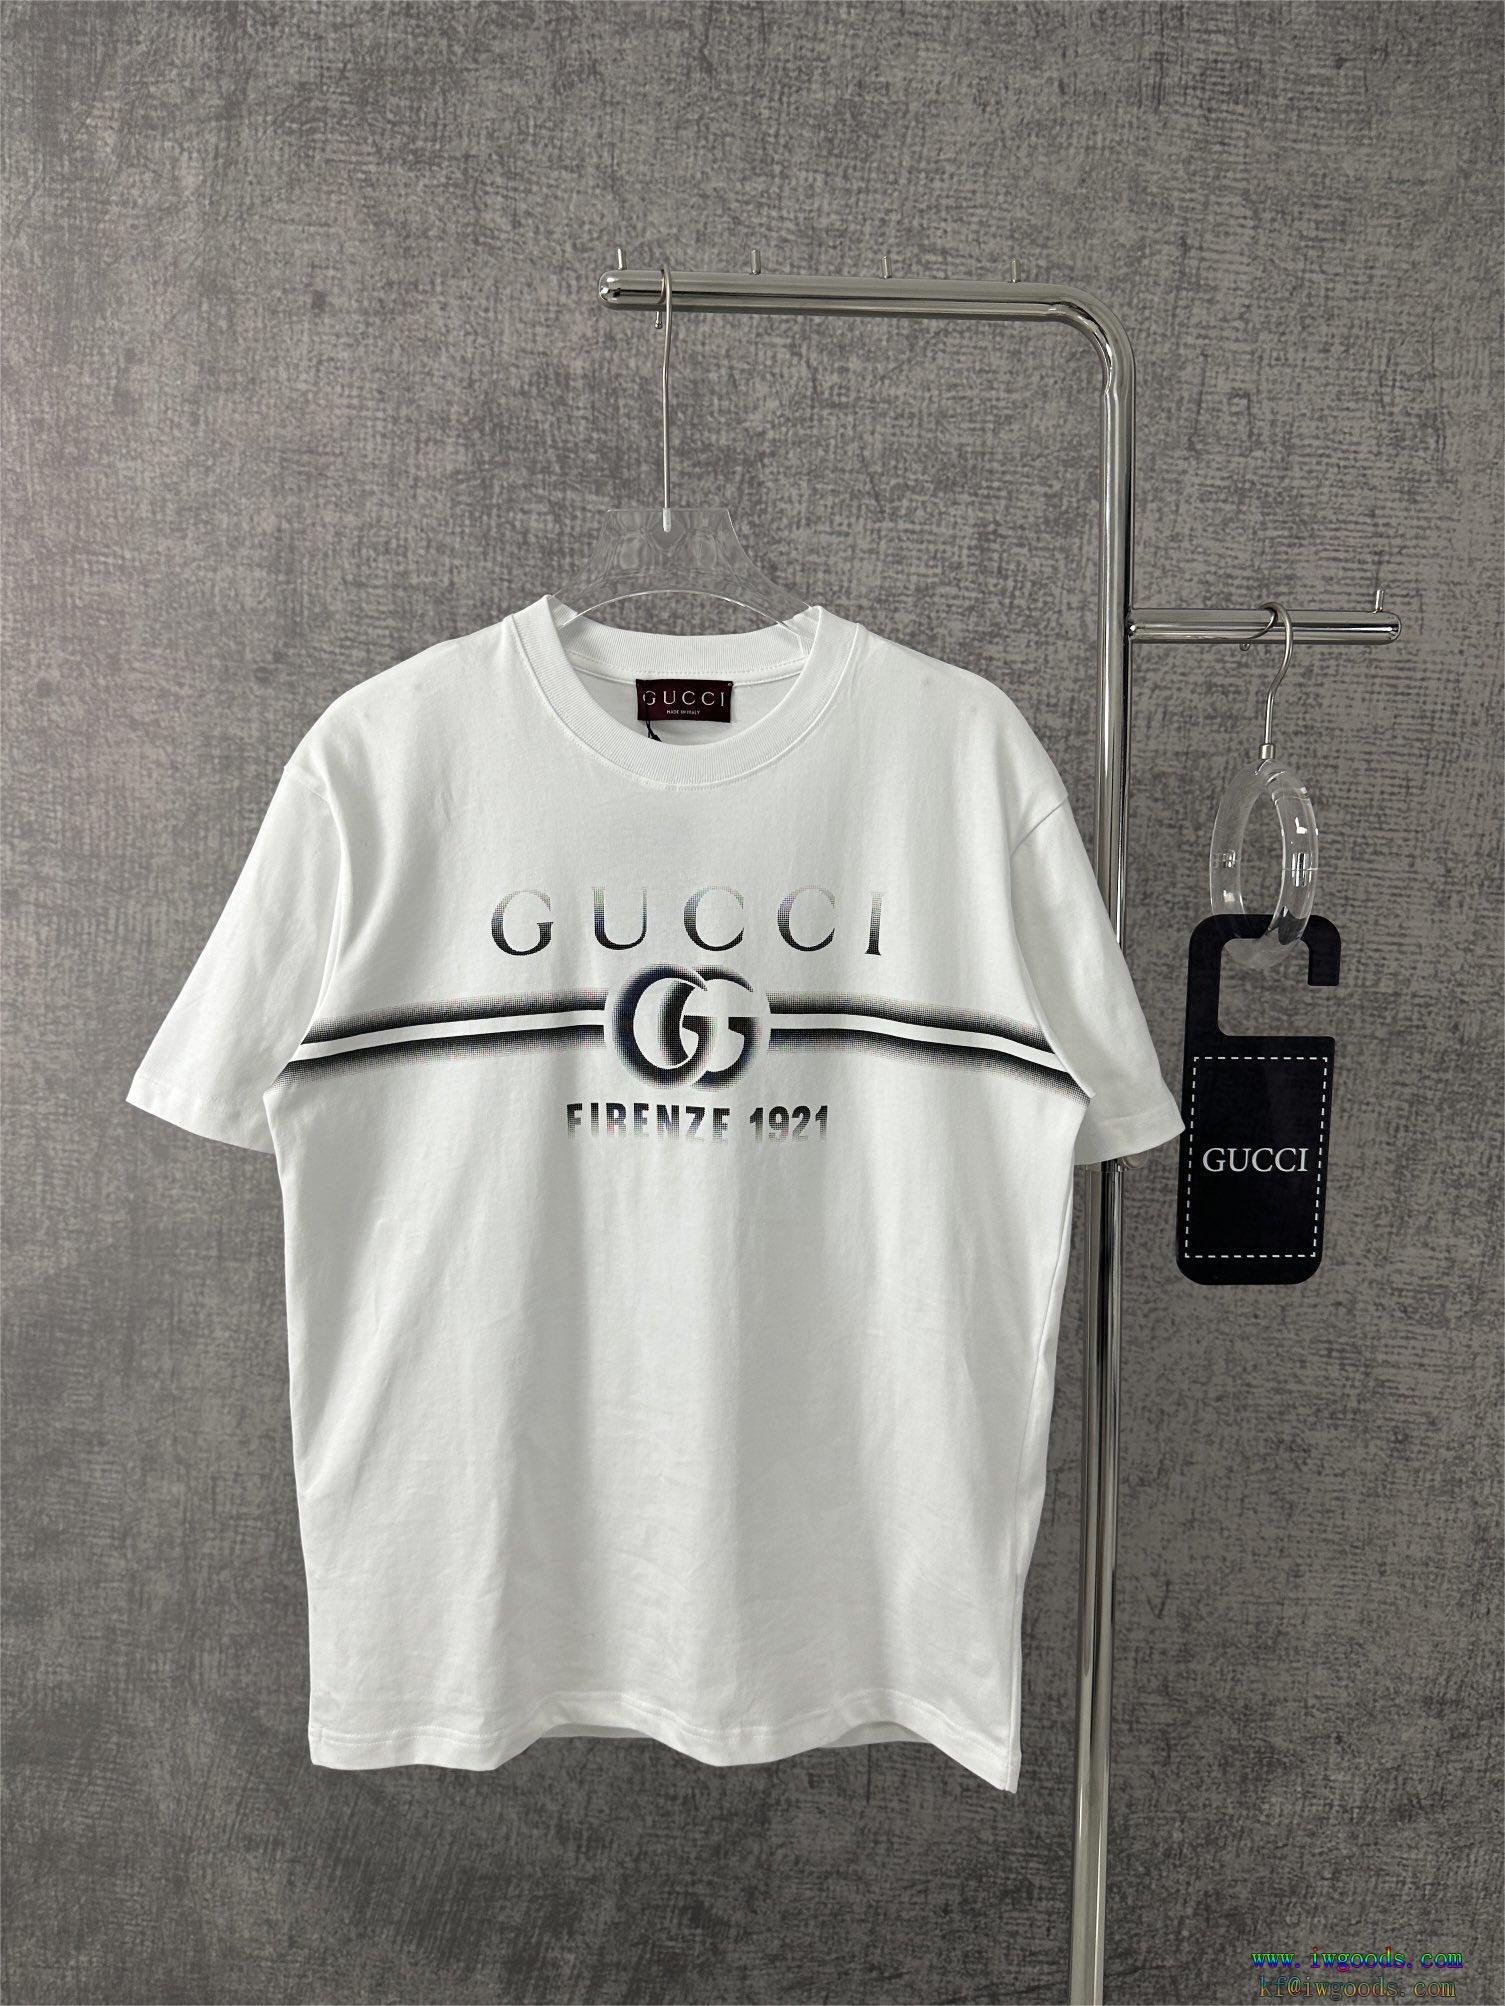 GUCC1半袖Tシャツ【ユニセックス】ブランド コピー,GUCC1スーパー コピー ブランド 通販